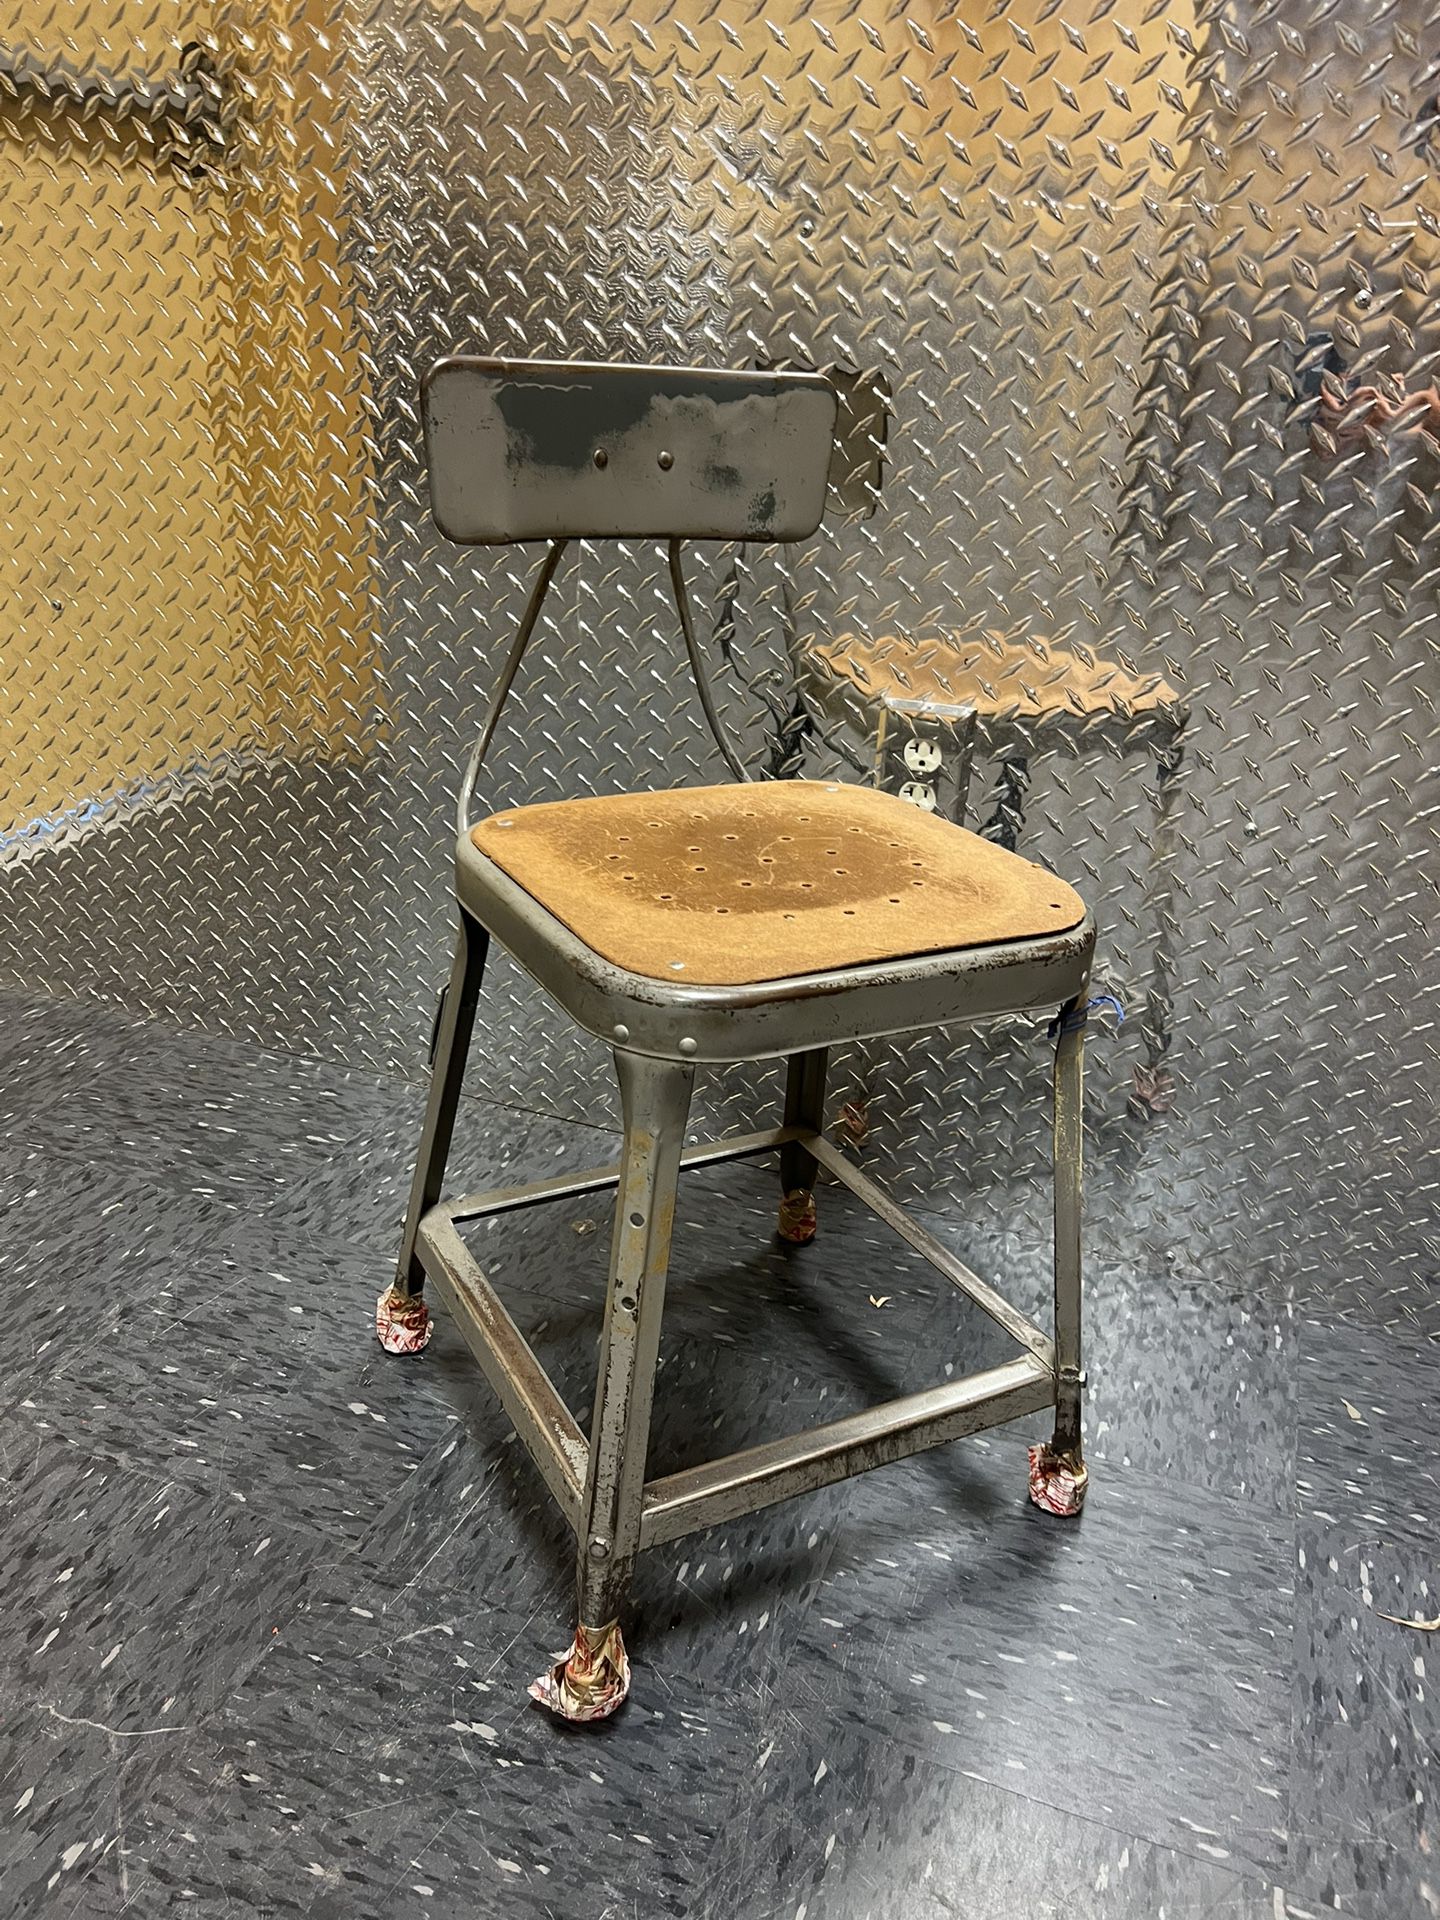 Vintage Industrial Metal Chair 